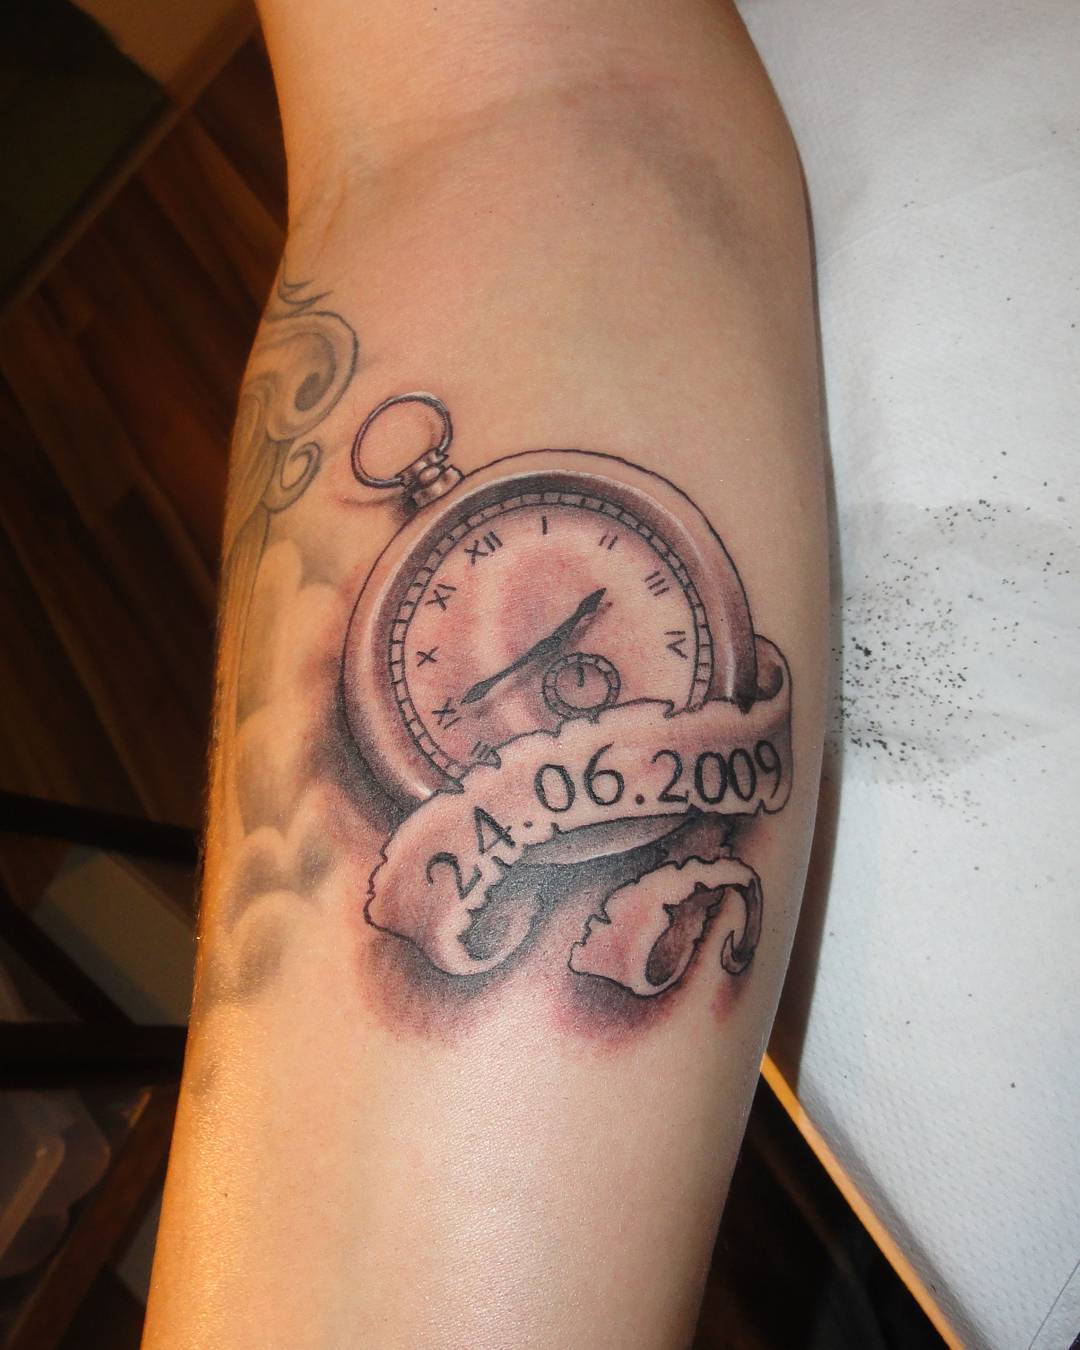 范先生小臂上的时钟纹身图案